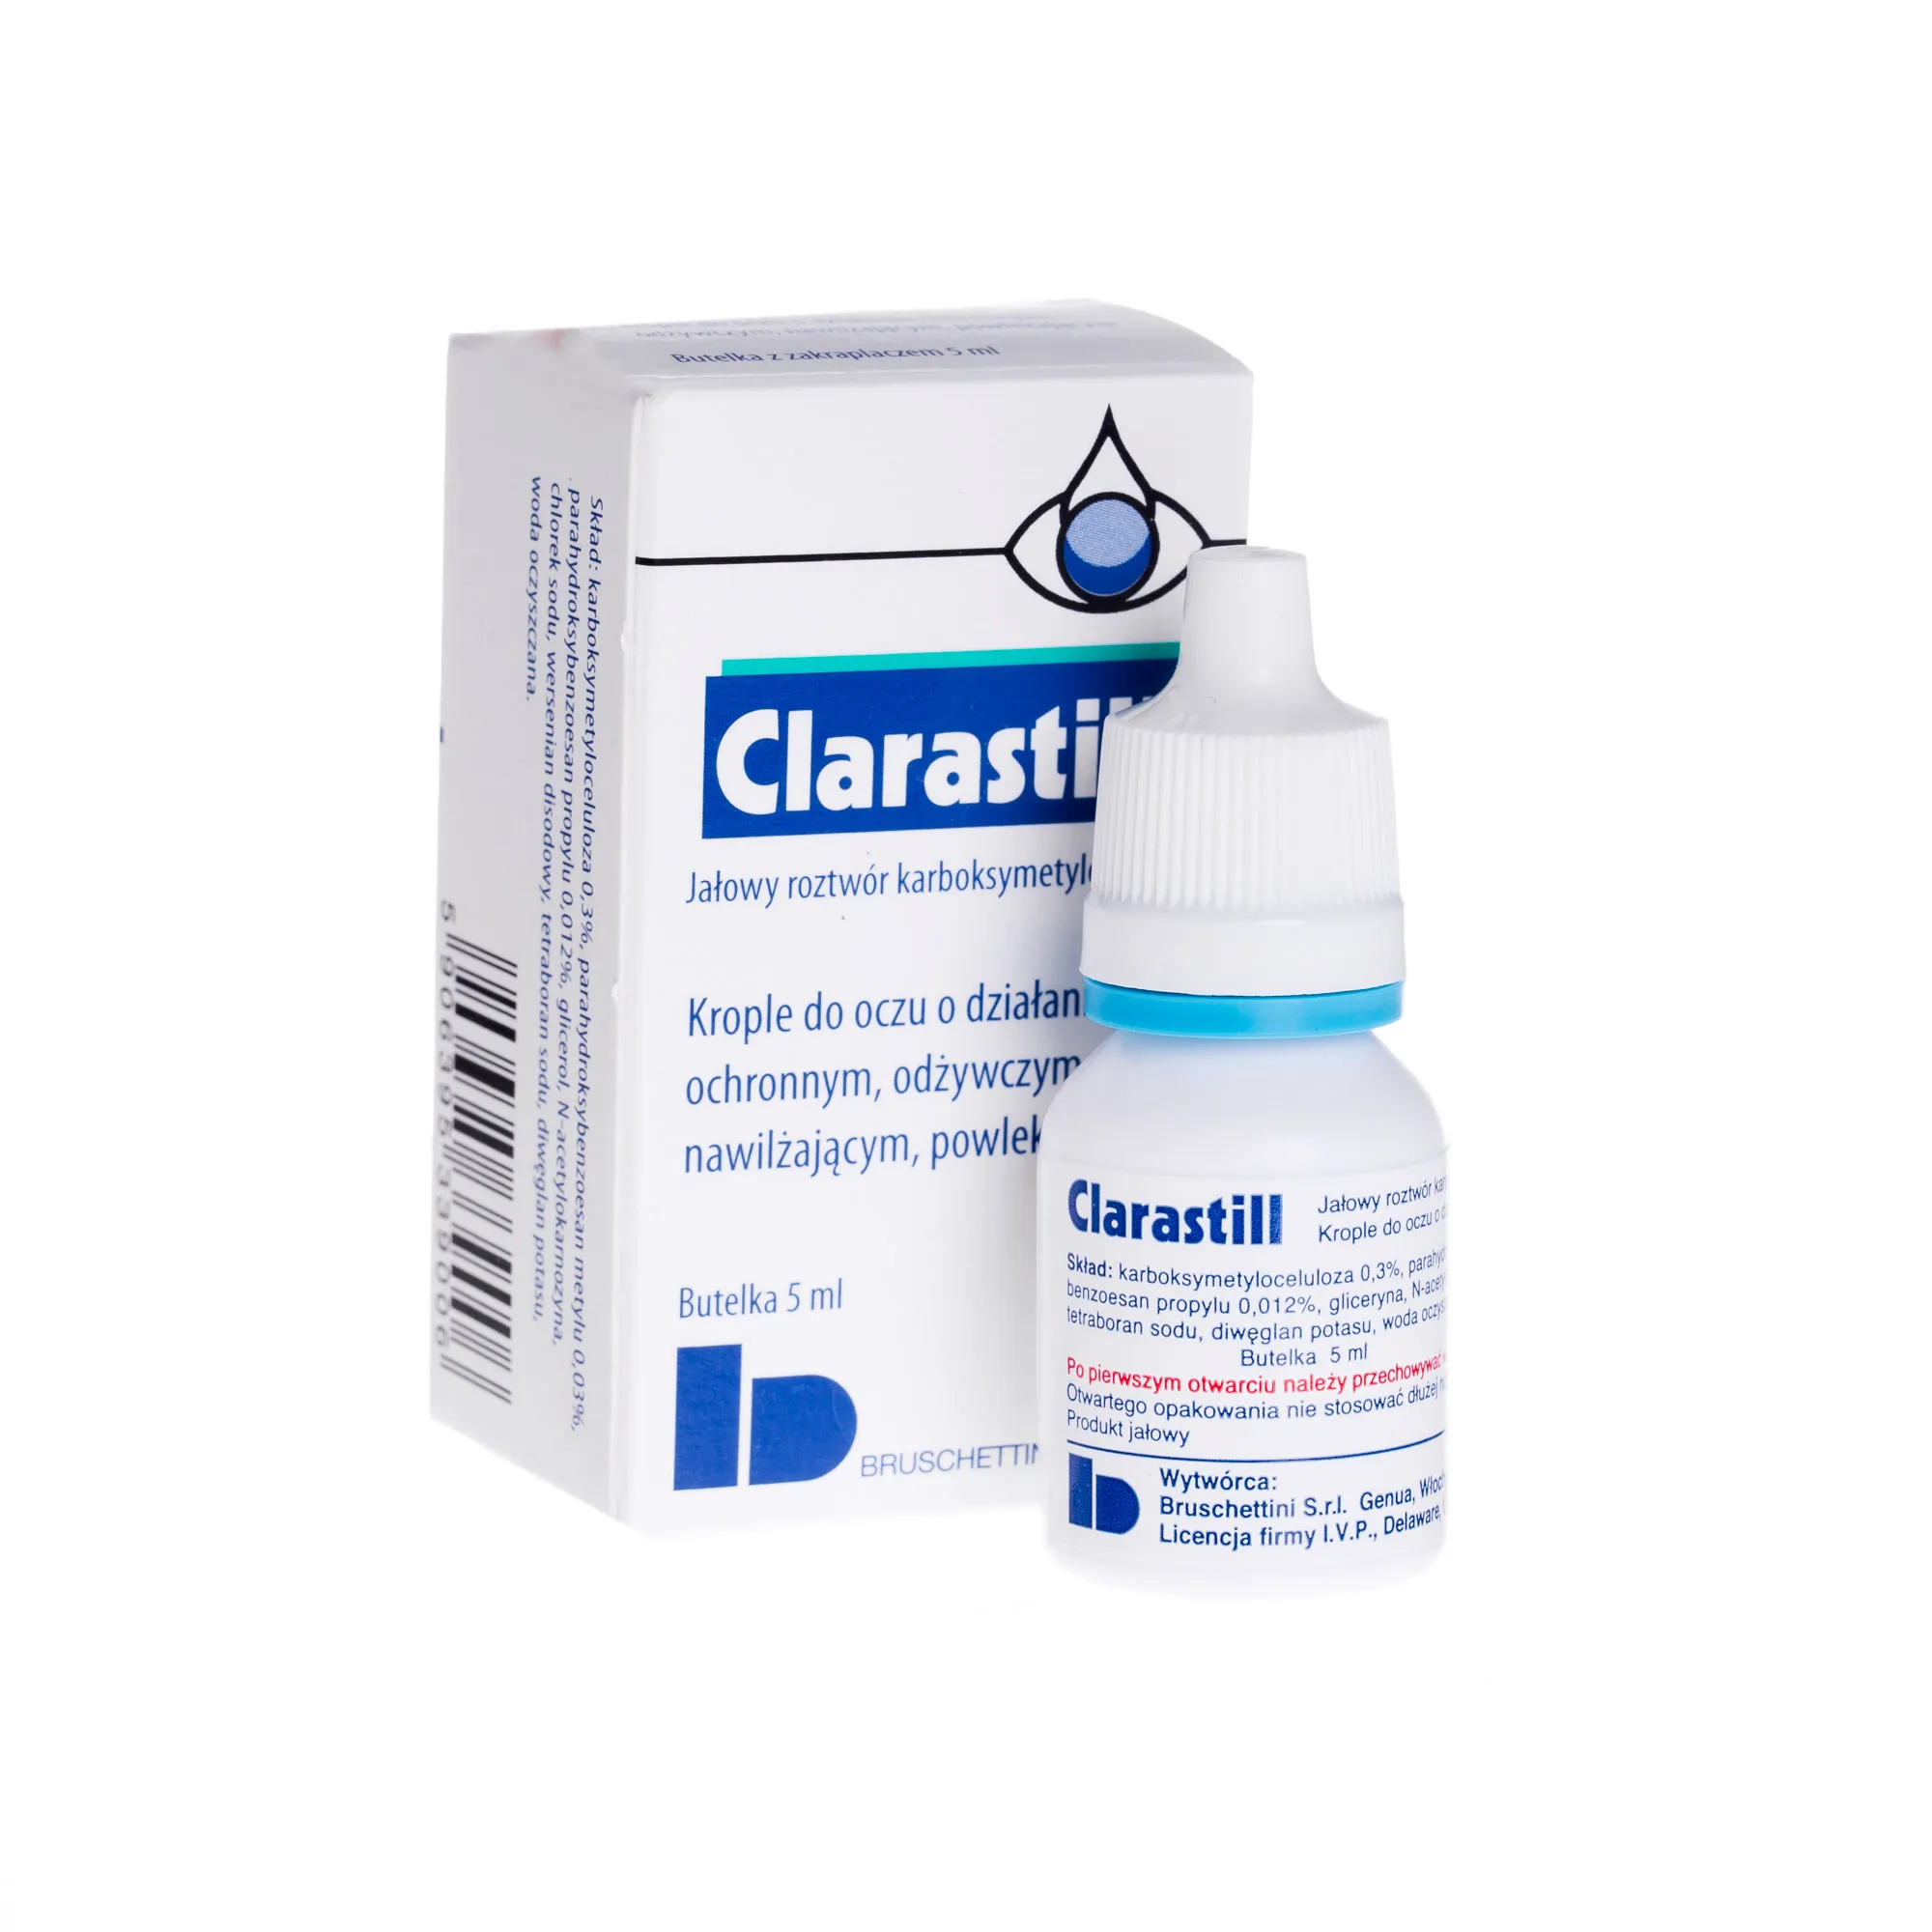 Clarastill, jałowy roztwór karboksymetylocelulozy, 5 ml 